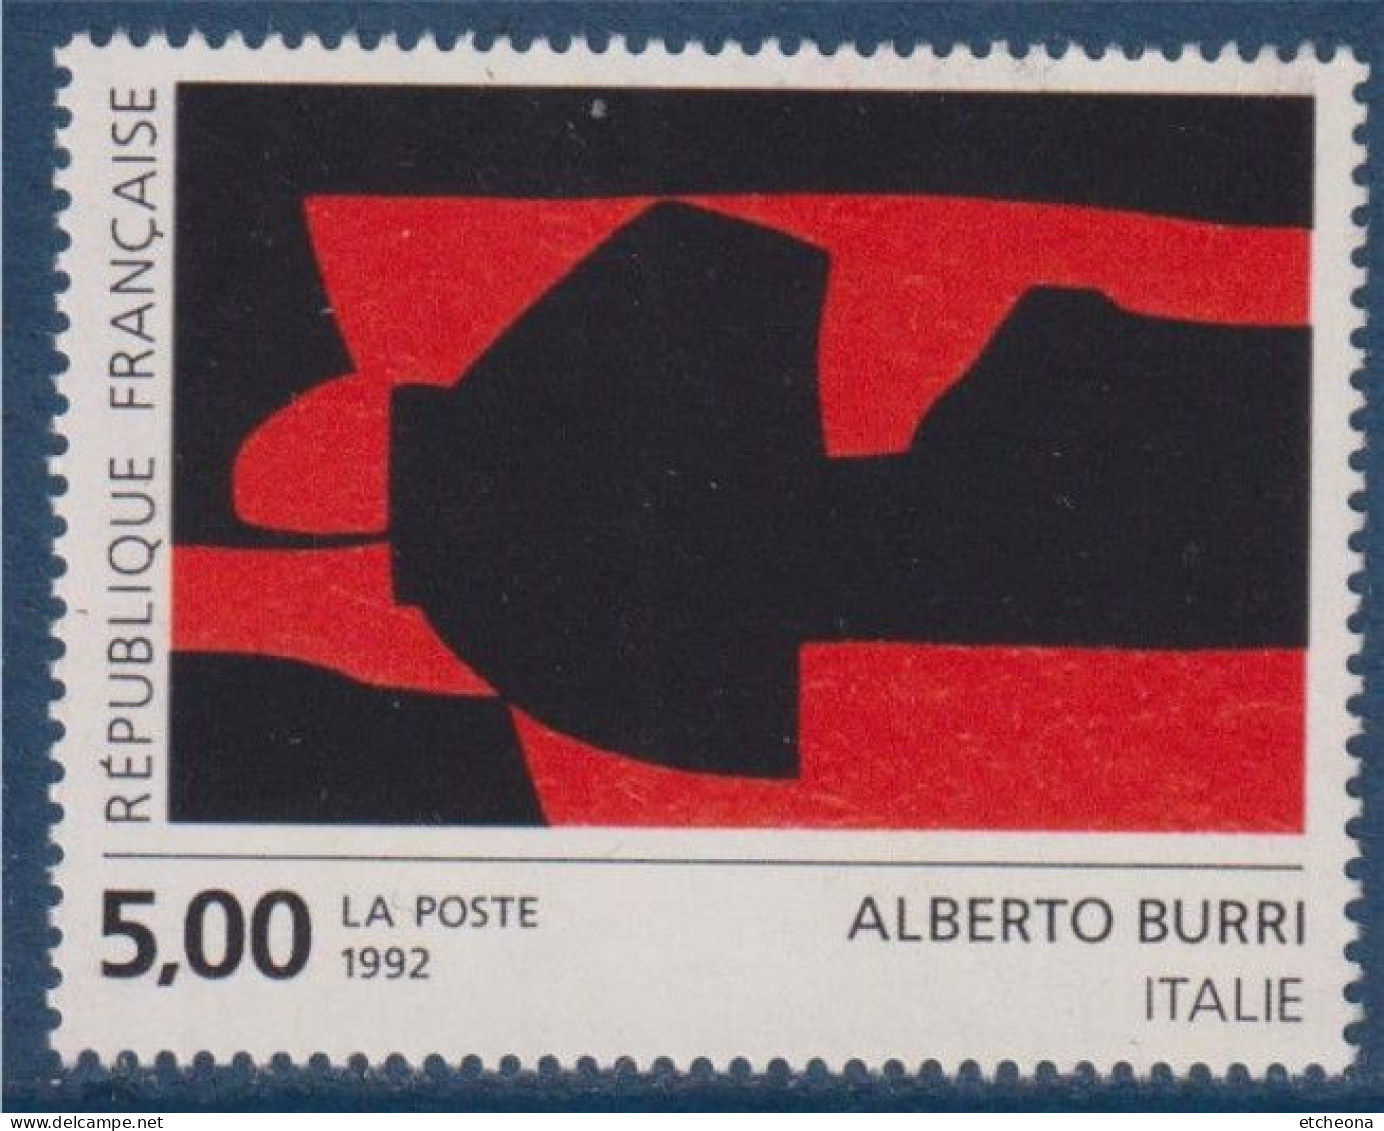 Série Européenne D'art Contemporain "Création Pour La Poste" D'Alberto Burri N°2780 Neuf Italie - Neufs